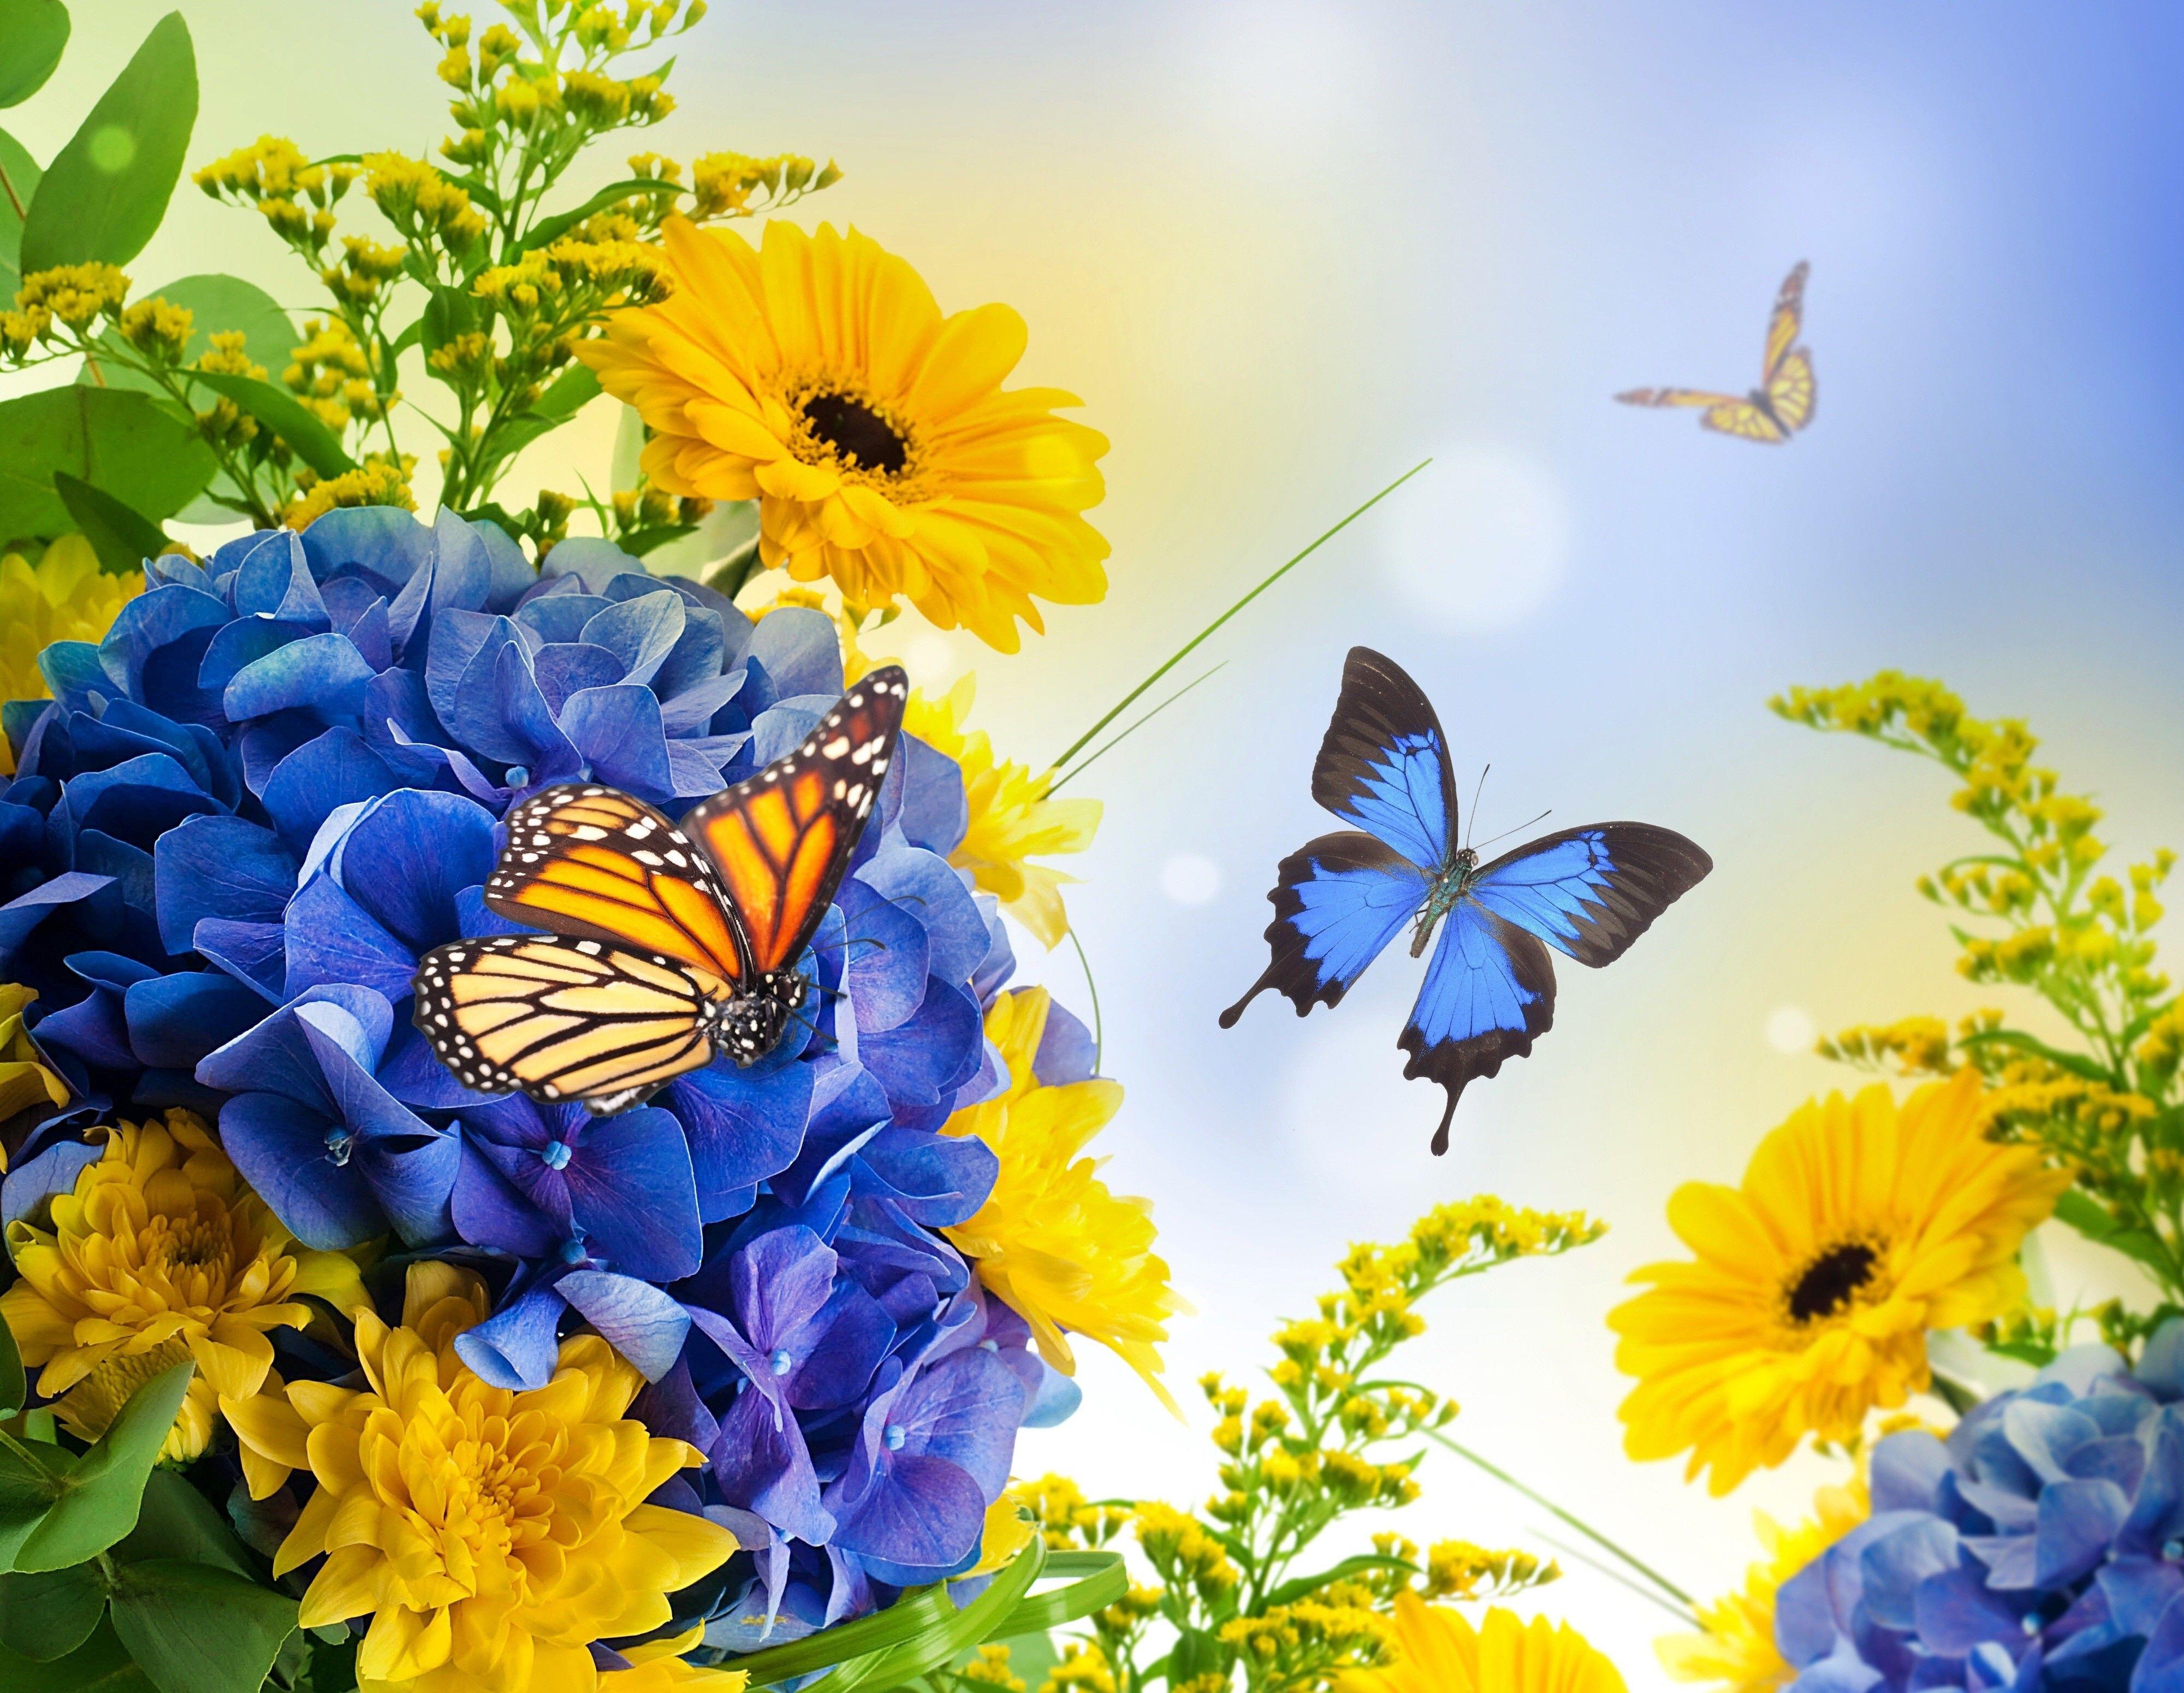 Картинка день бабочек. Бабочка на цветке. Желто голубые цветы. Летние цветы с бабочками. Красивый букет с бабочками.